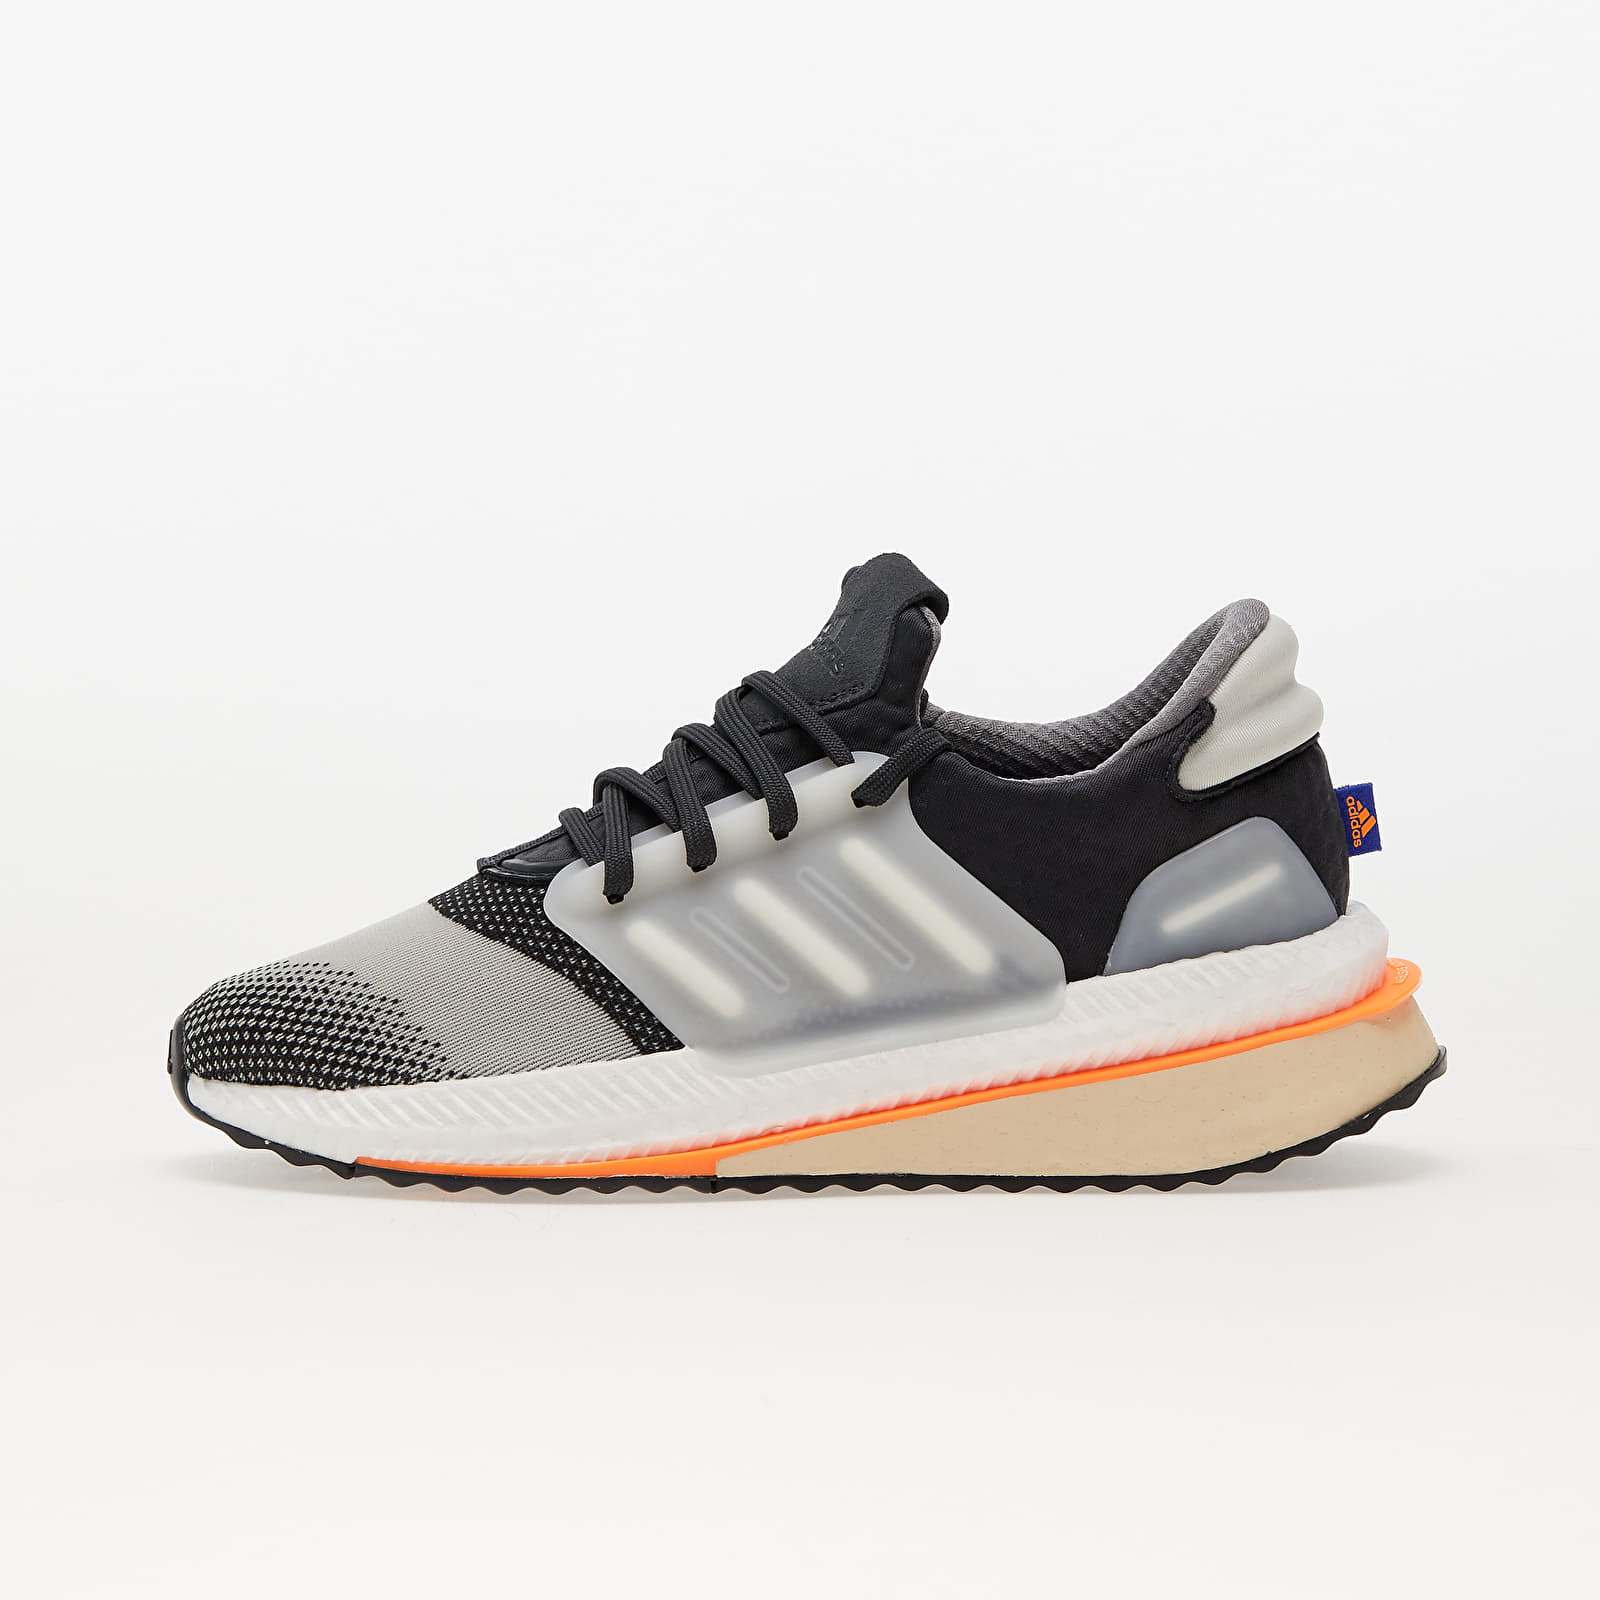 Turnschuhe und Schuhe für Männer adidas Performance X_PLRBOOST Carbon/ Off White/ Screen Orange